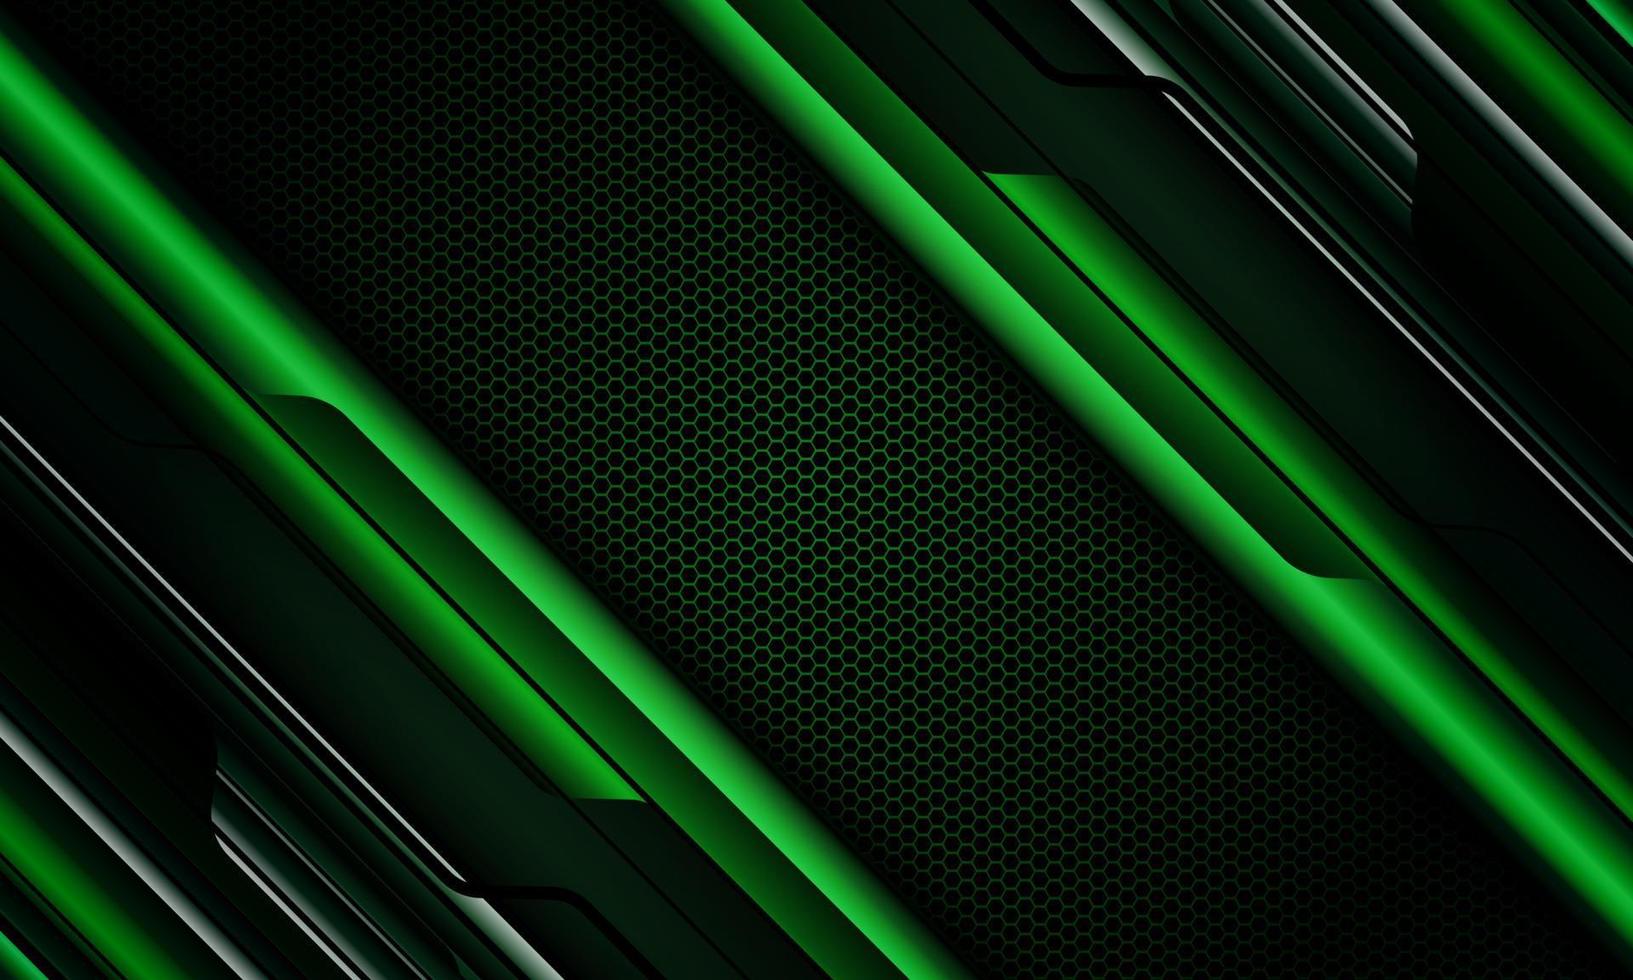 circuito negro cibernético metálico verde abstracto geométrico con diseño de malla hexagonal oscura vector de fondo de tecnología futurista moderna